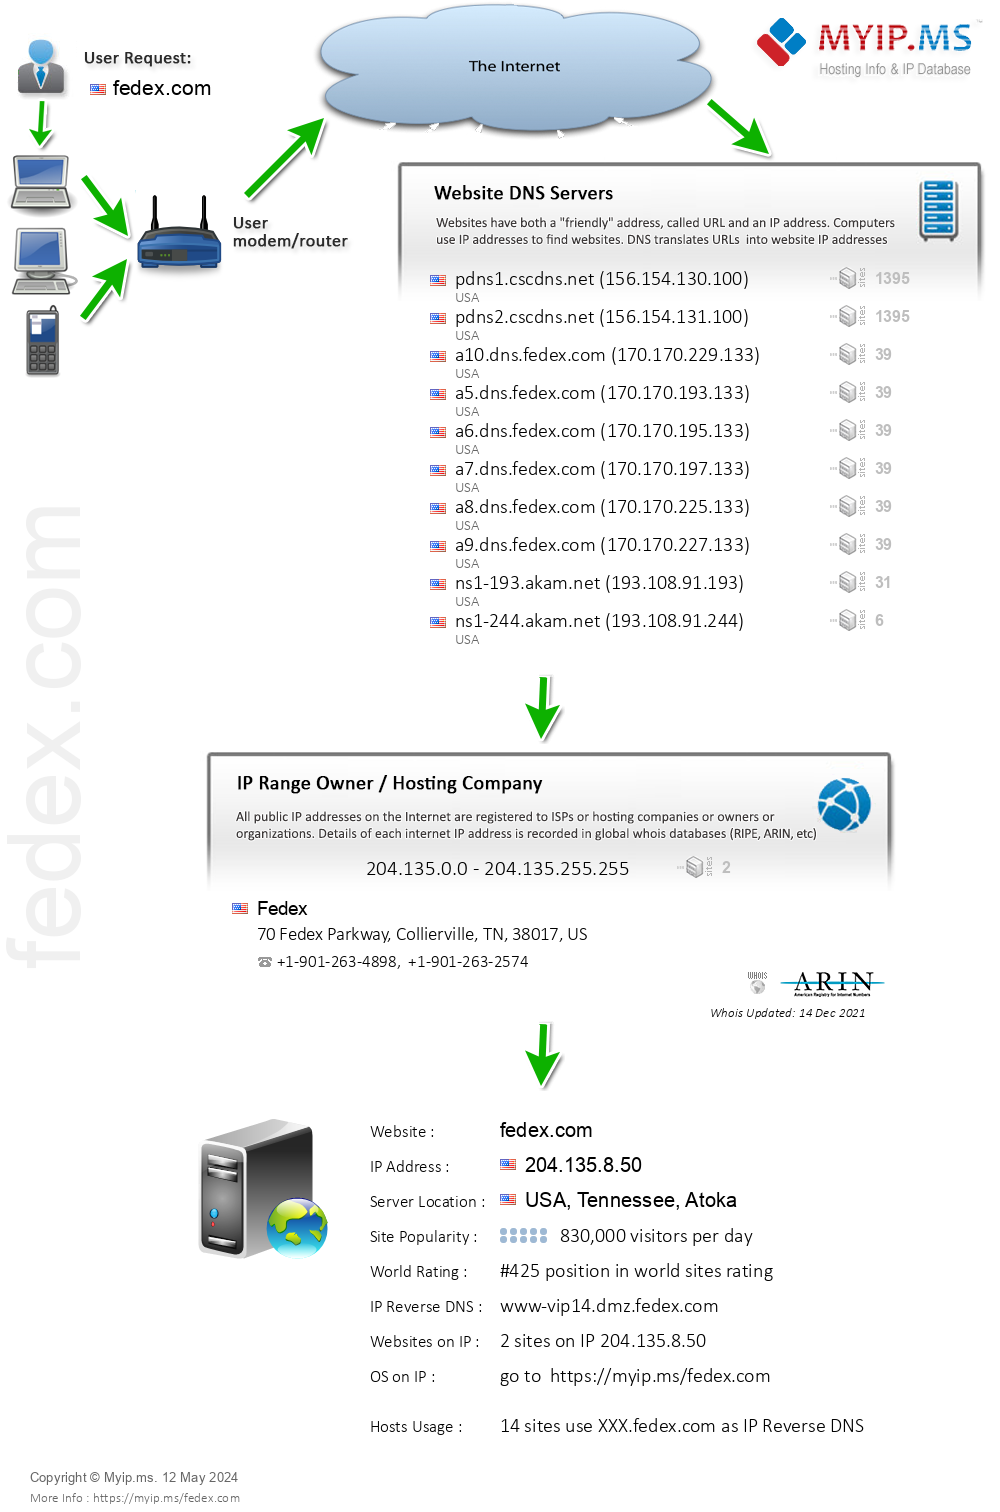 Fedex.com - Website Hosting Visual IP Diagram